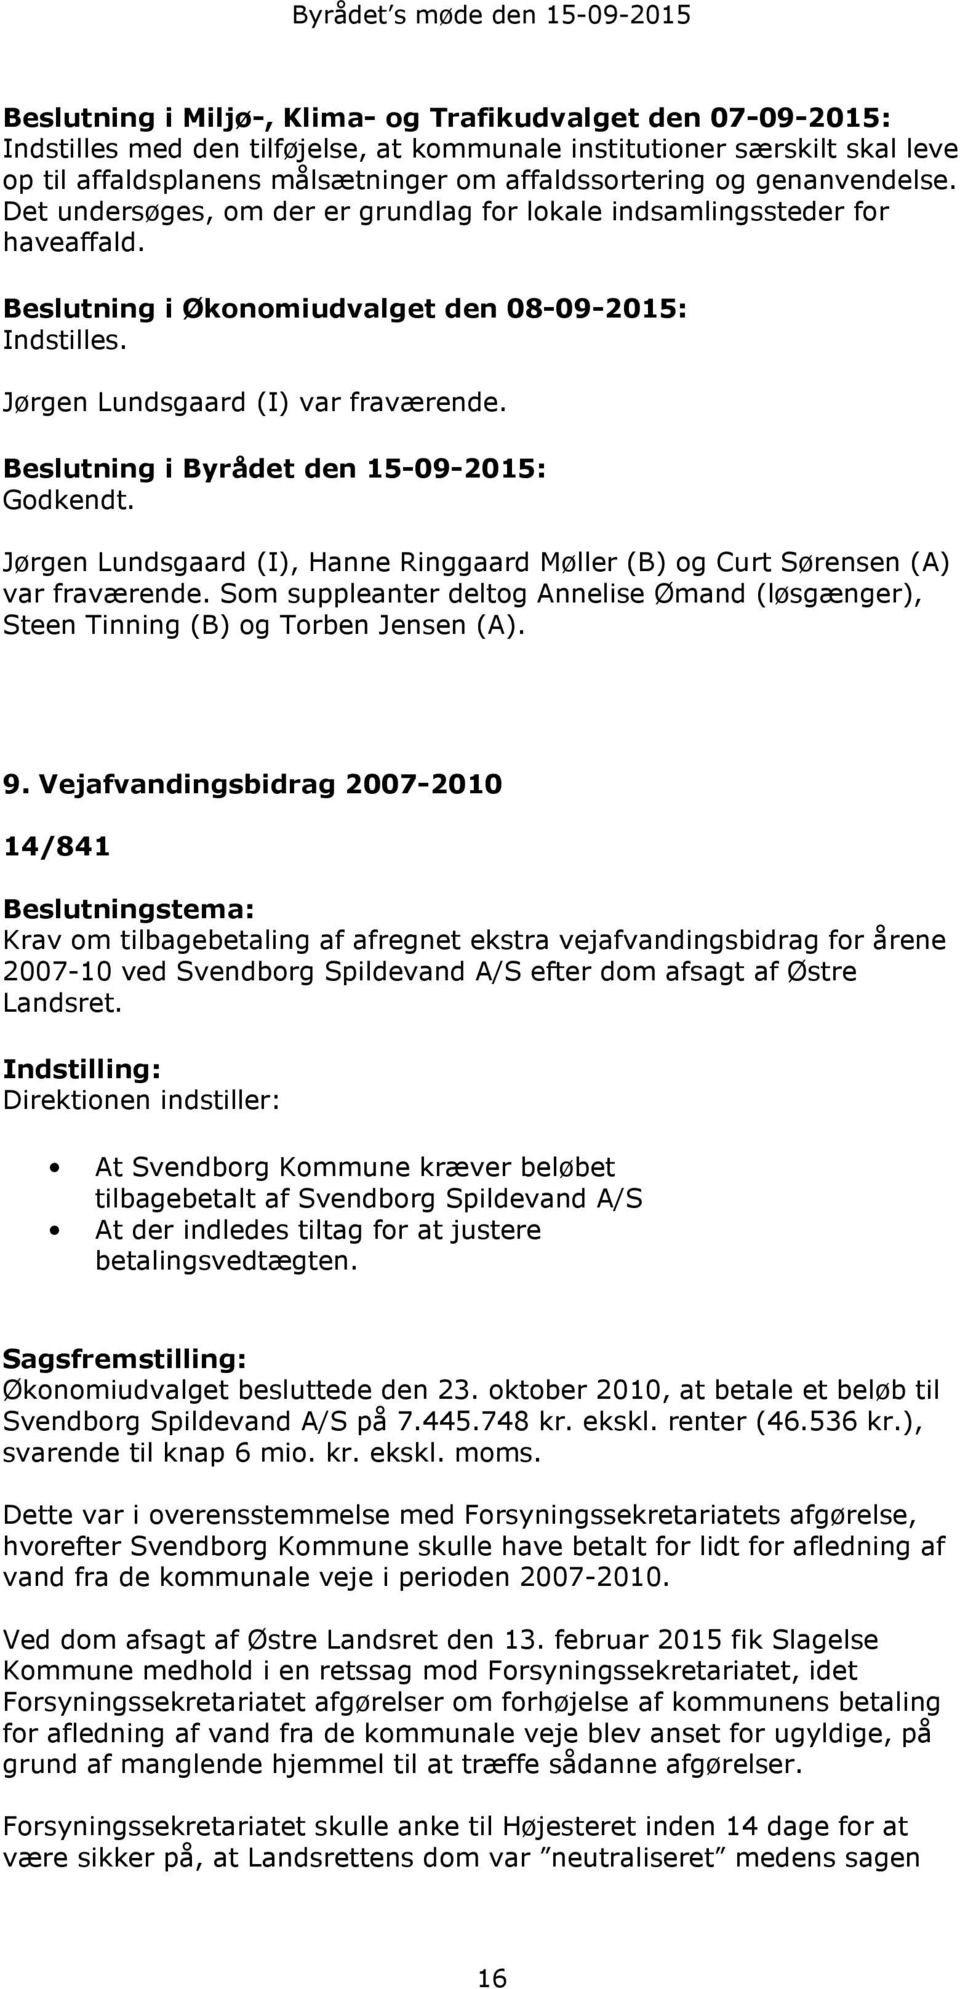 Beslutning i Byrådet den 15-09-2015: Godkendt. Jørgen Lundsgaard (I), Hanne Ringgaard Møller (B) og Curt Sørensen (A) var fraværende.